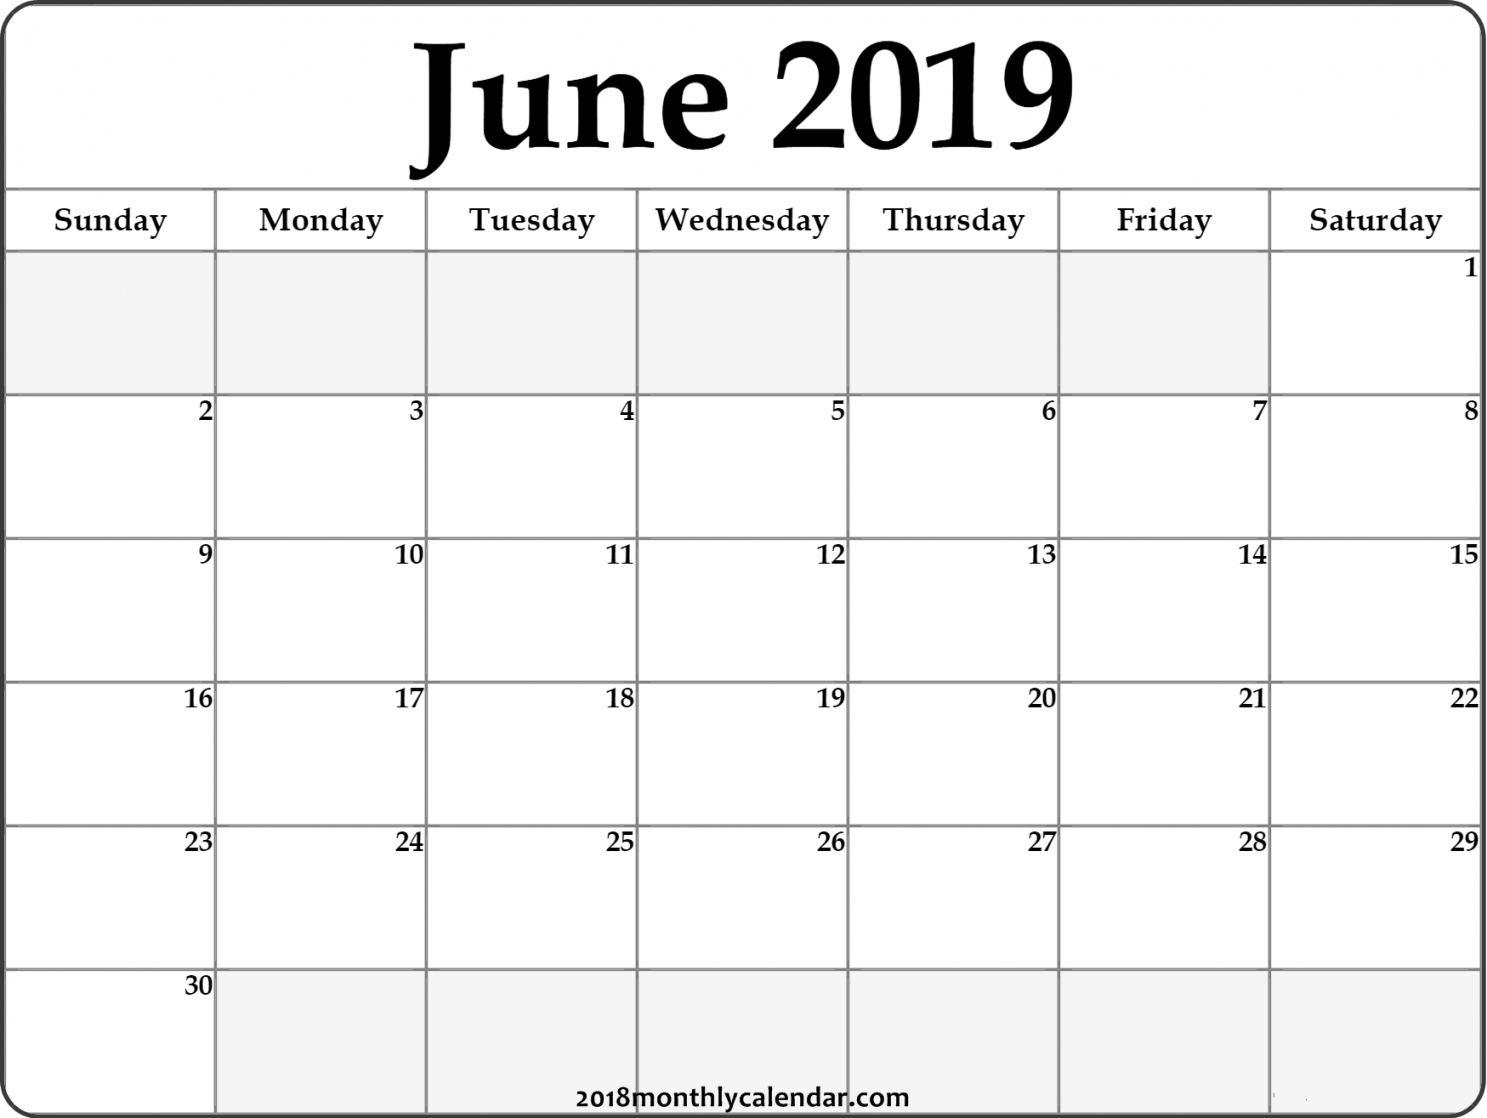 June Calendar Printable